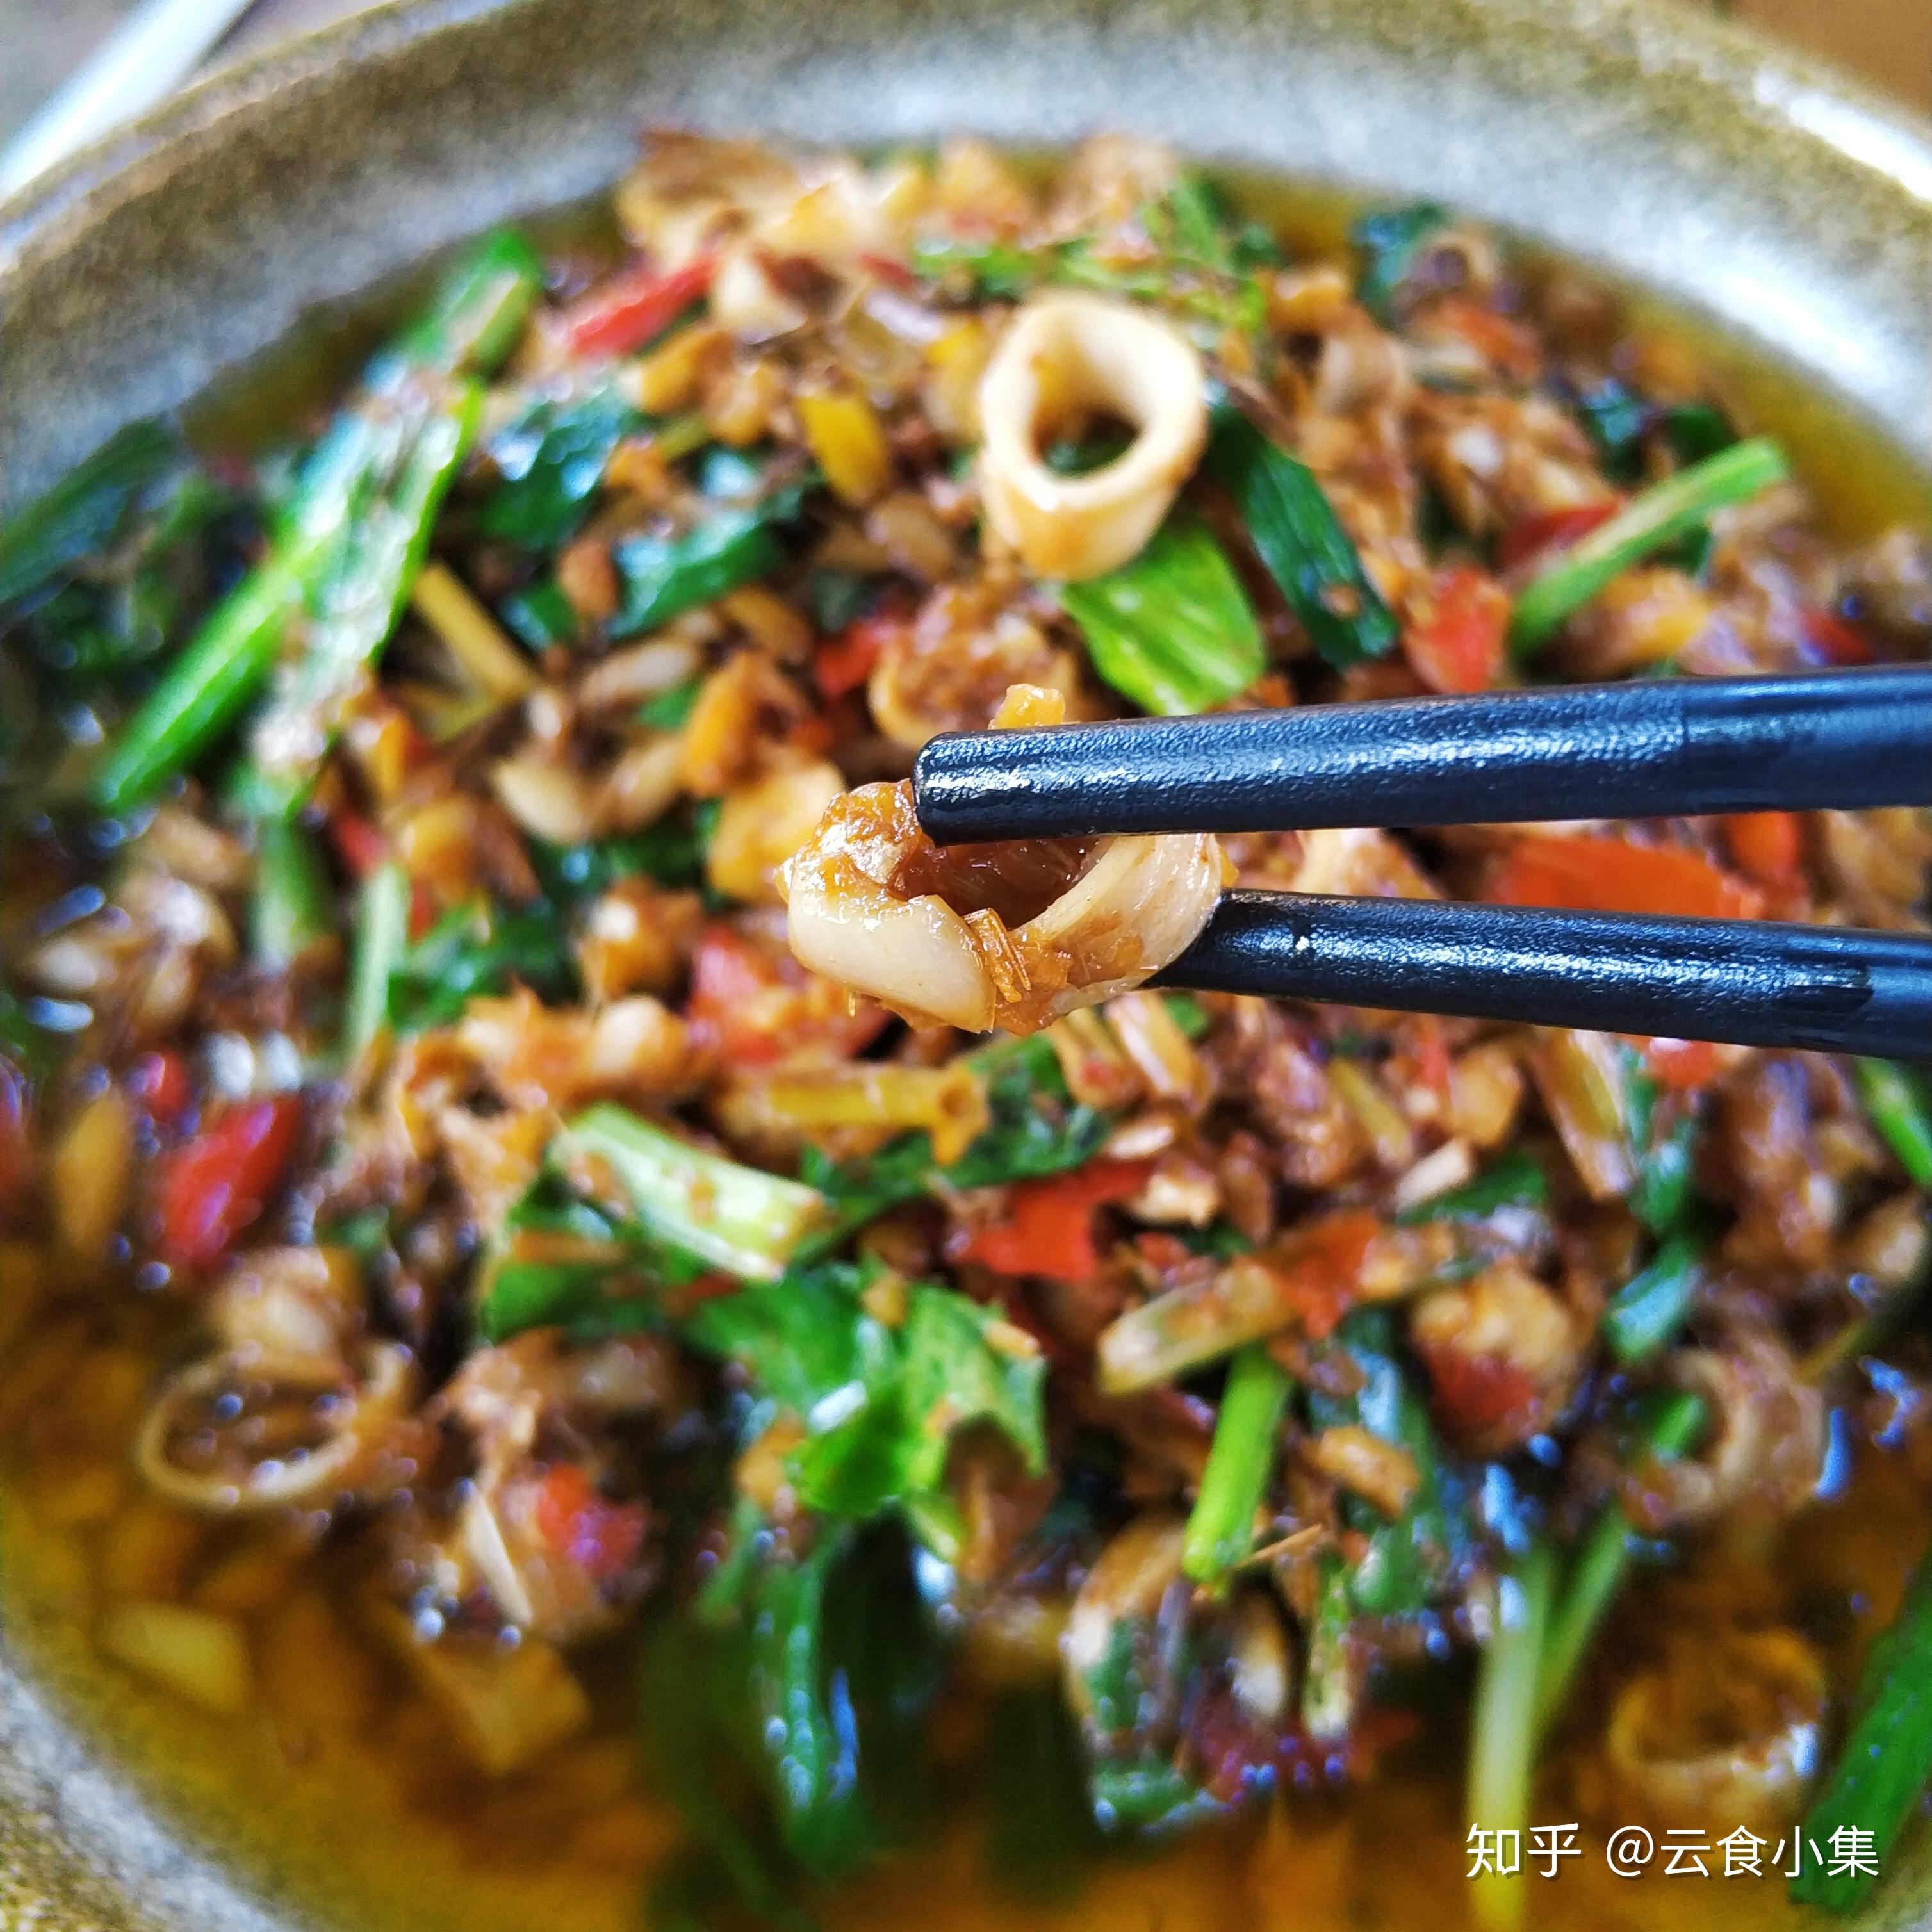 油呛心管 - 版纳告庄曼西贡餐厅东南亚米其林特色美食